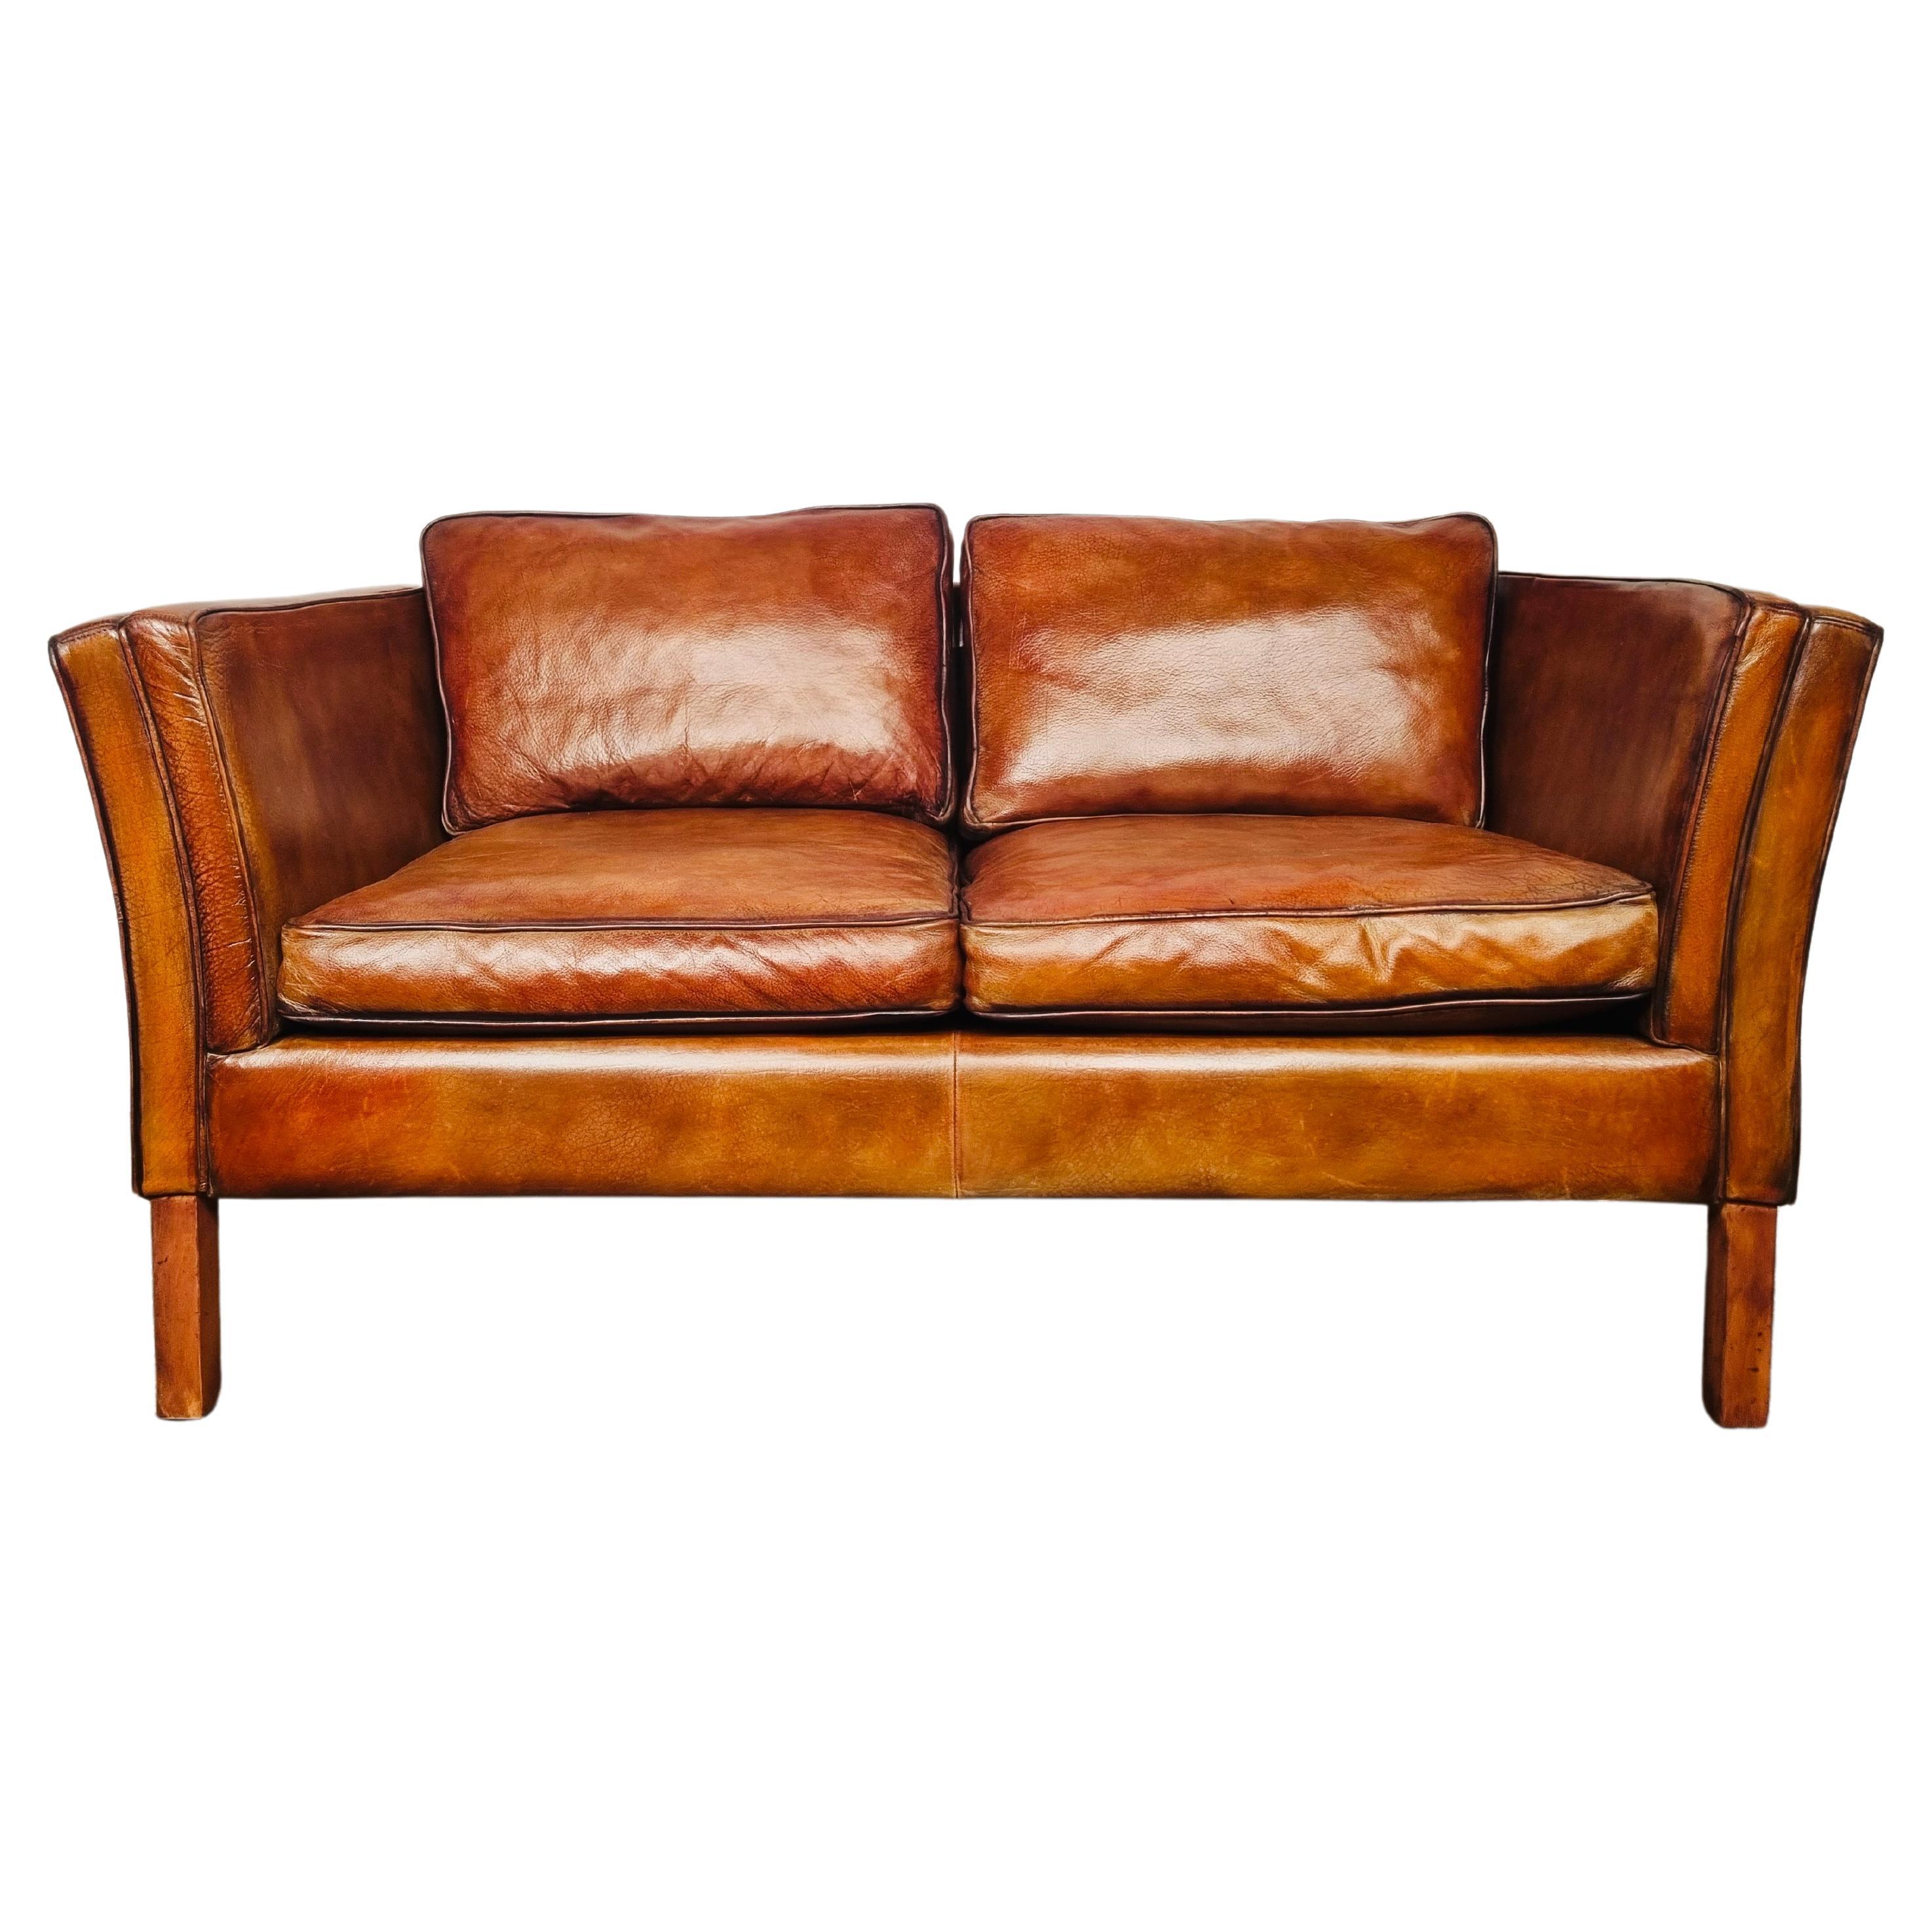 Patiniertes dänisches Vintage-Sofa aus hellbraunem Leder mit zwei Etagen #679